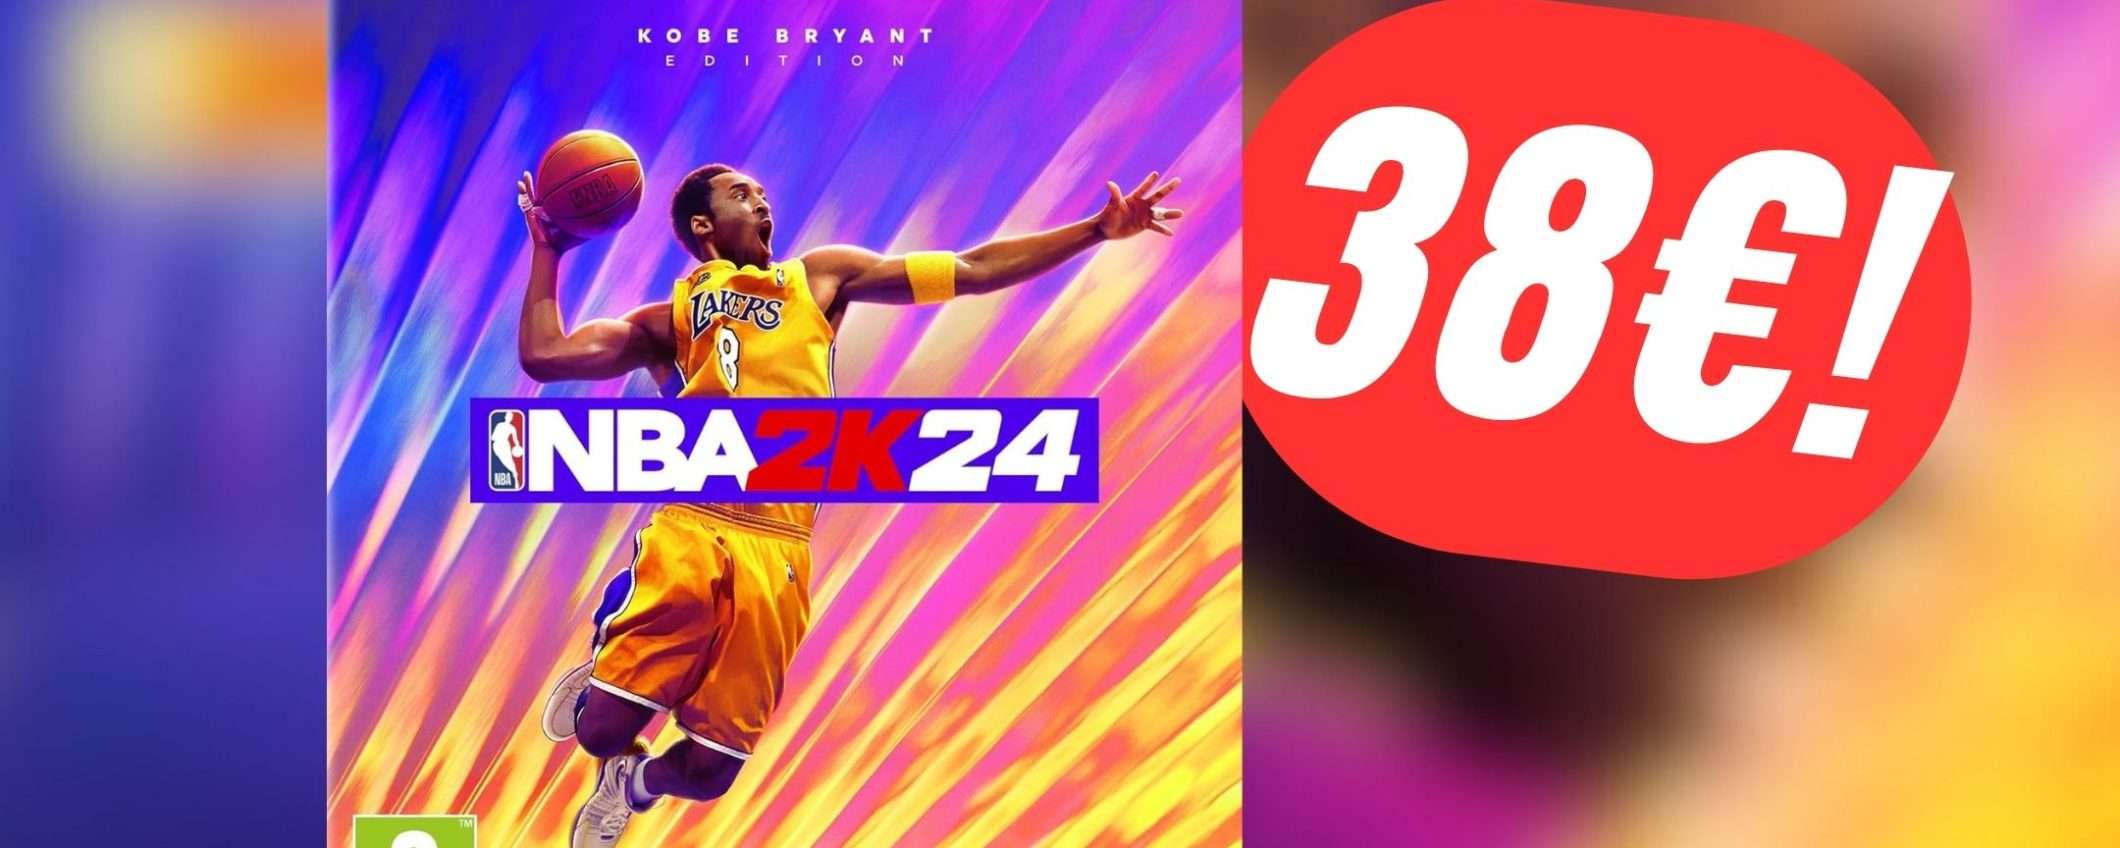 Scendi in campo con NBA 2K24 per PS5 (ora a soli 38€!)